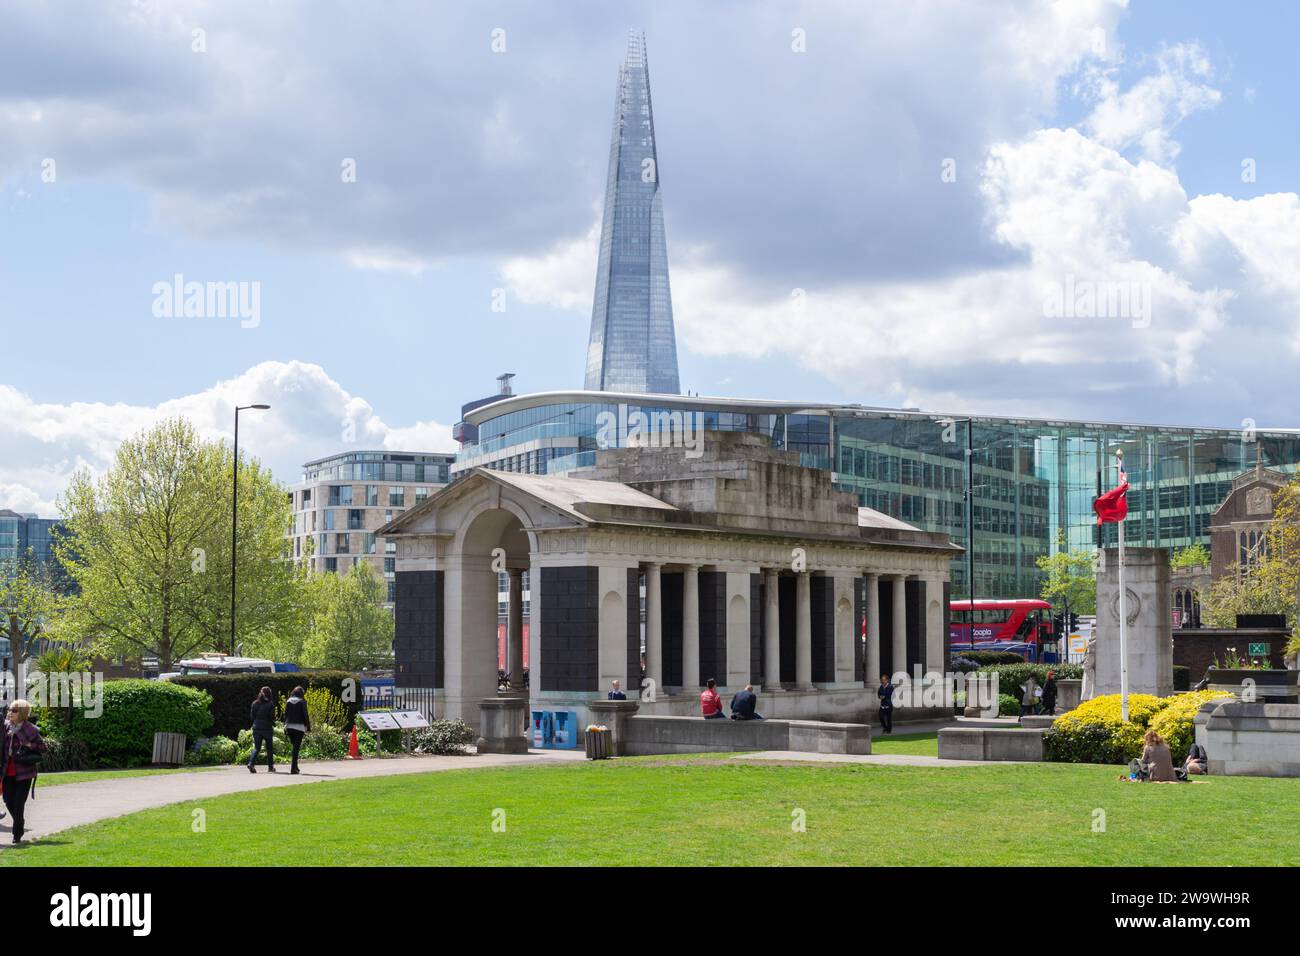 Tower Hill, Londra - 30 aprile 2015: I Trinity Square Gardens con il Tower Hill Memorials e l'edificio Shard sullo sfondo. Foto Stock